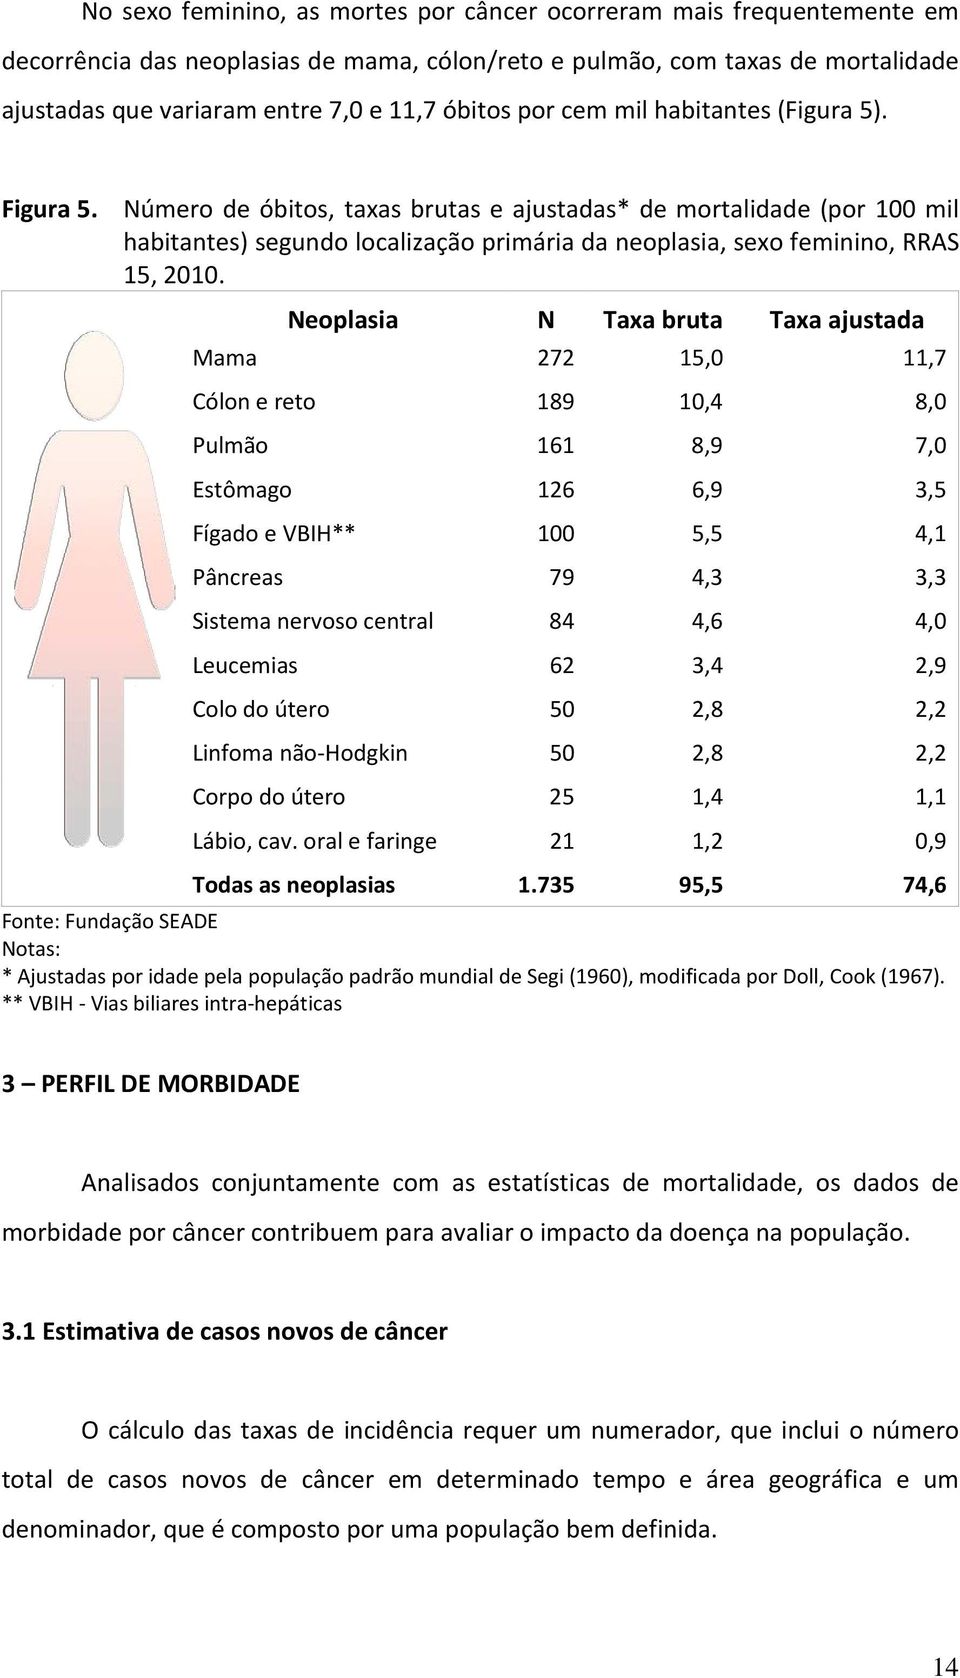 Número de óbitos, taxas brutas e ajustadas* de mortalidade (por 100 mil habitantes) segundo localização primária da neoplasia, sexo feminino, RRAS 15, 2010.